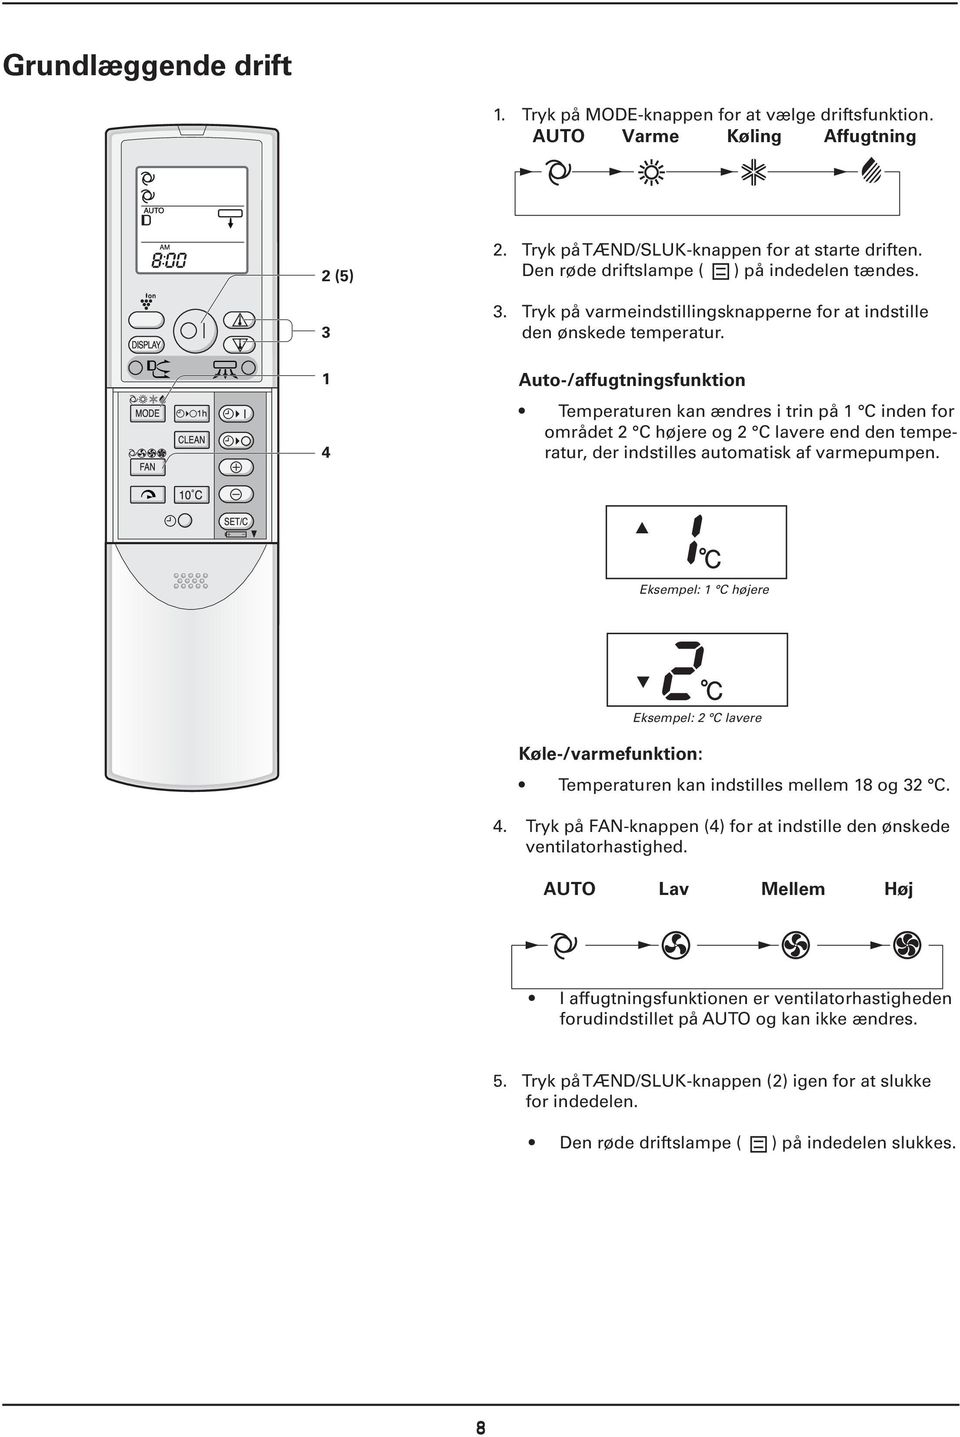 IVT Nordic Inverter 12 KHR-N - PDF Free Download